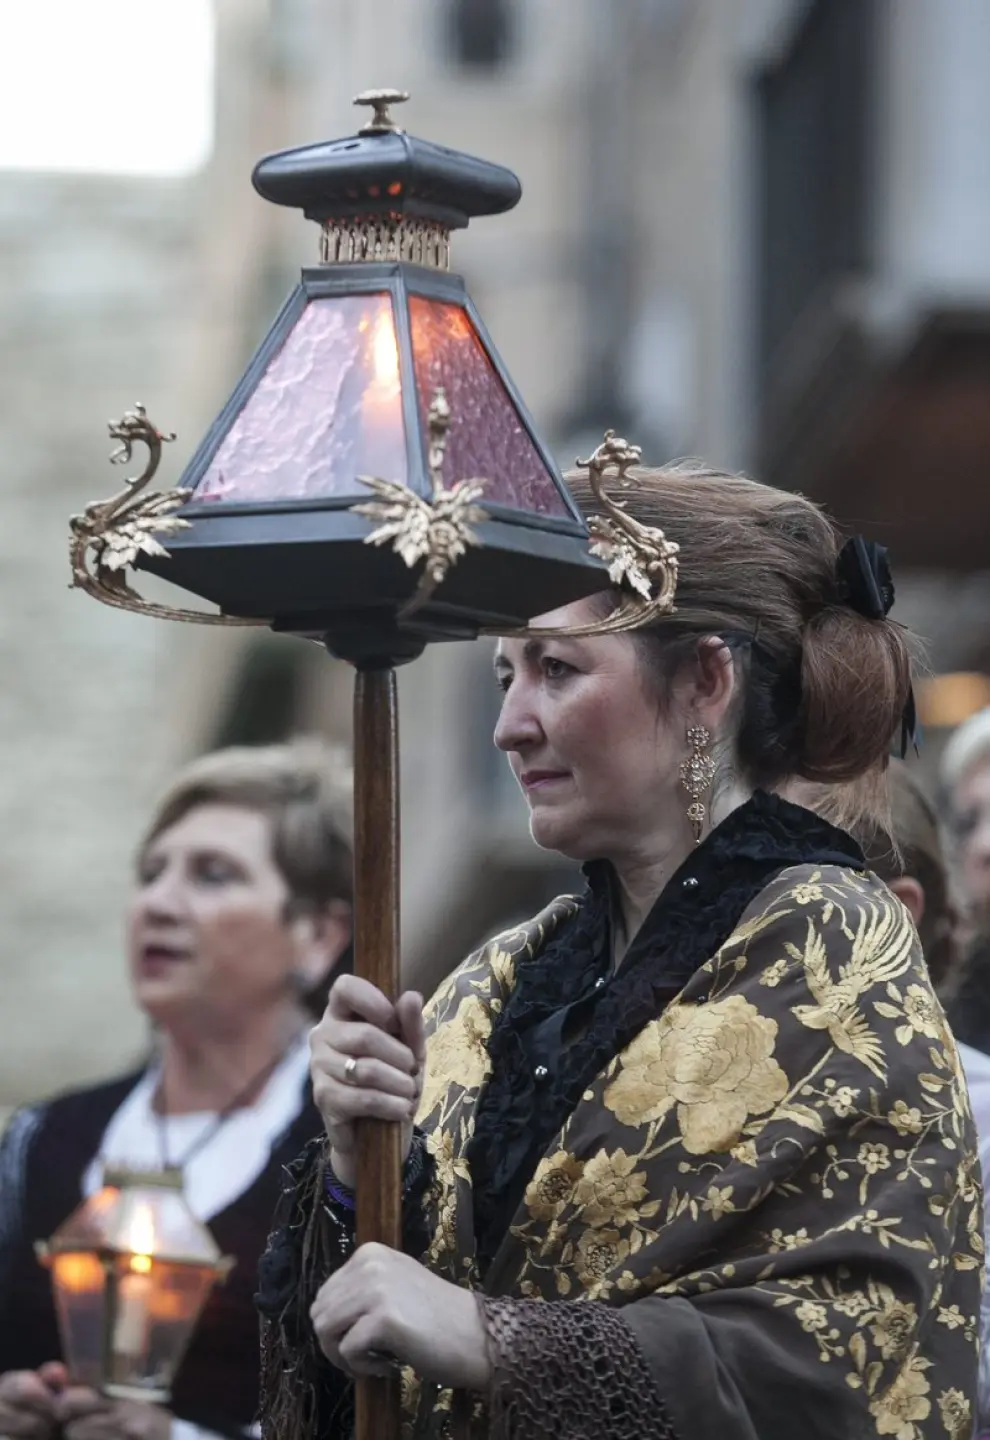 Procesion del Santo Rosario de Cristal por las calles de Zaragoza